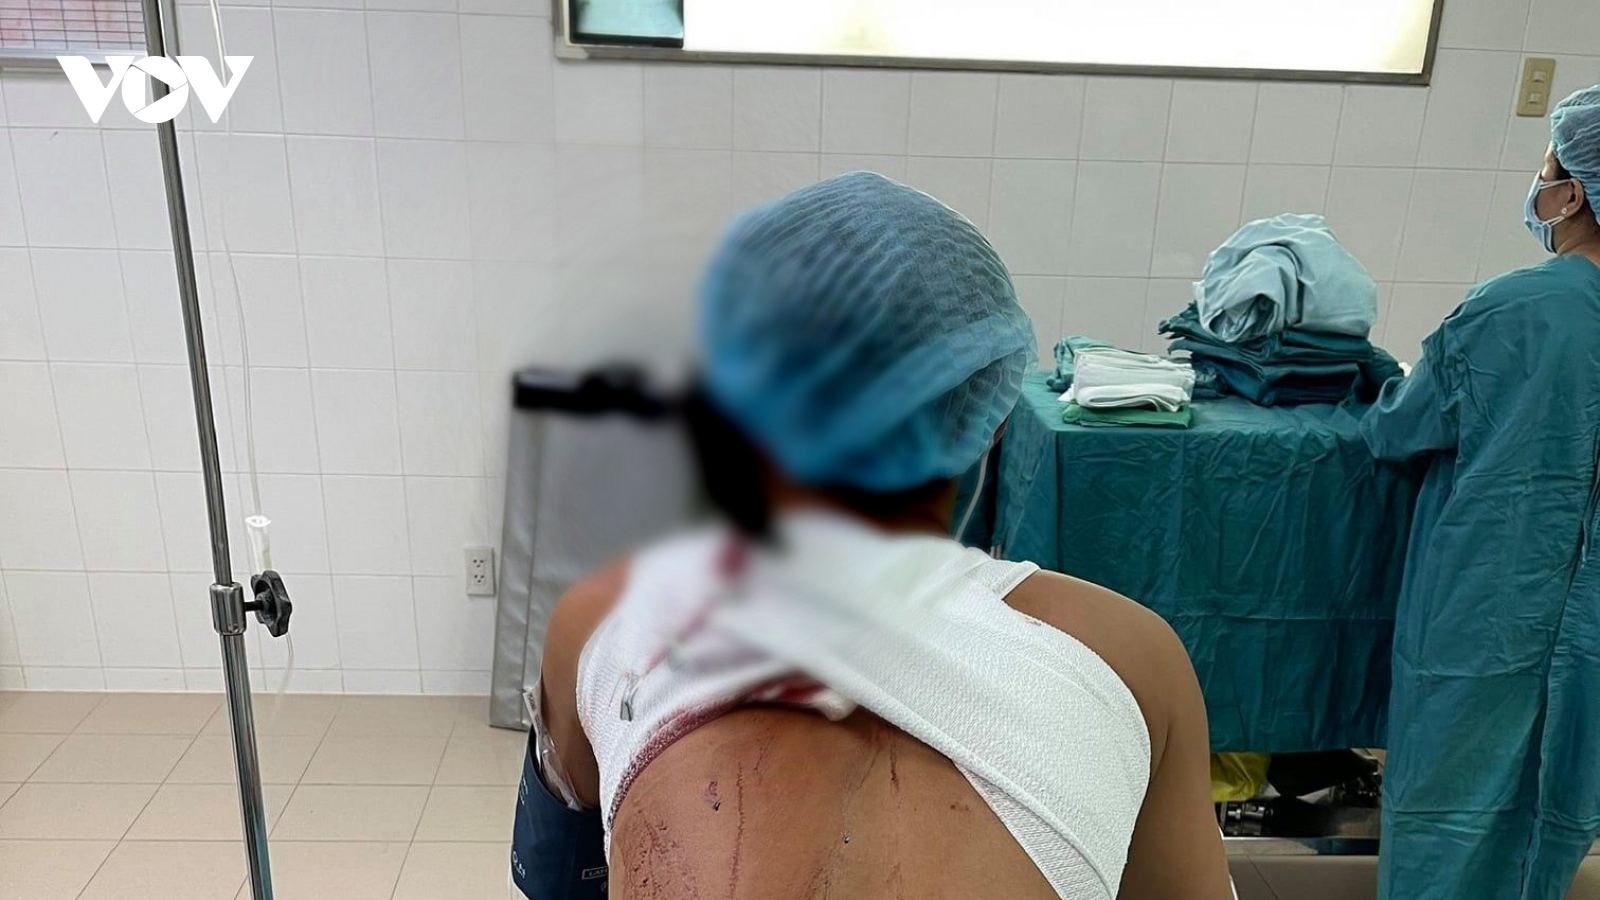 Bắt giữ 2 đối tượng đánh, chém người nhập viện cấp cứu ở Tiền Giang